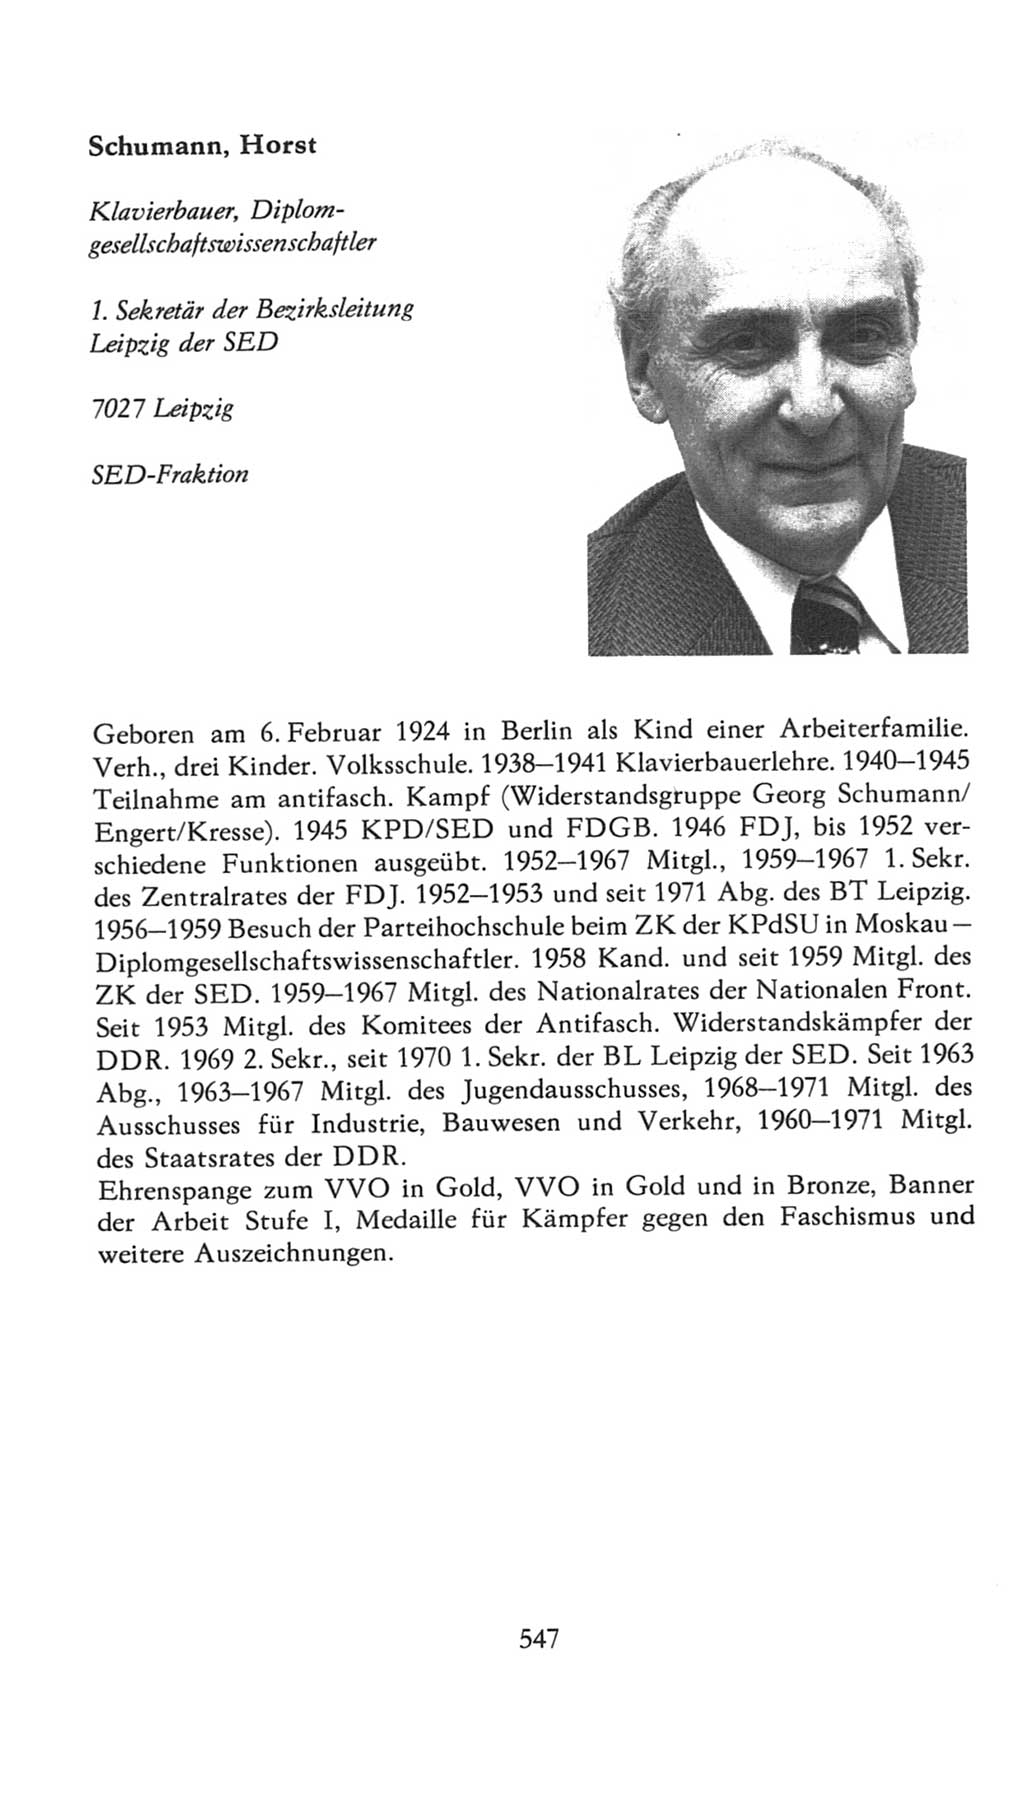 Volkskammer (VK) der Deutschen Demokratischen Republik (DDR), 7. Wahlperiode 1976-1981, Seite 547 (VK. DDR 7. WP. 1976-1981, S. 547)